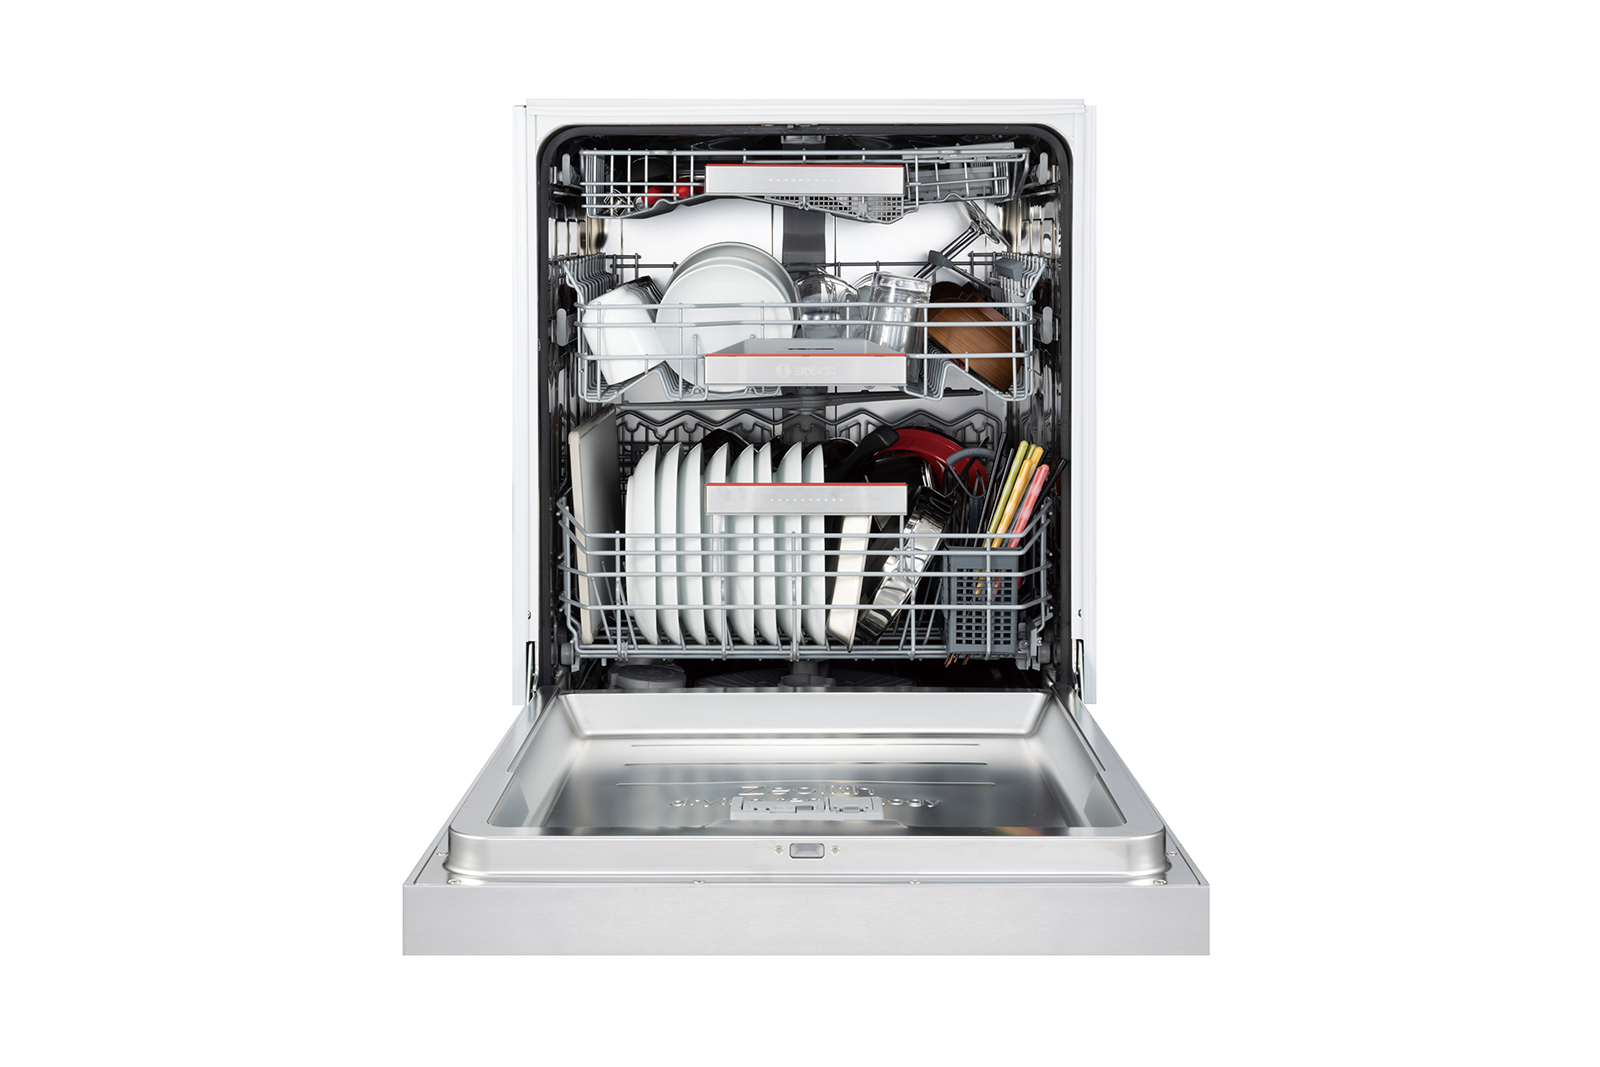 ビルトイン食洗機 フロントオープン W600 前面操作タイプ ゼオライトドライ（本体のみ） KB-PT004-03-G234 およそ12人分の基本的な食器を一気に洗浄できる容量です。3,4人暮らしで1日分の食器量がまとめて洗える容量とお考えください